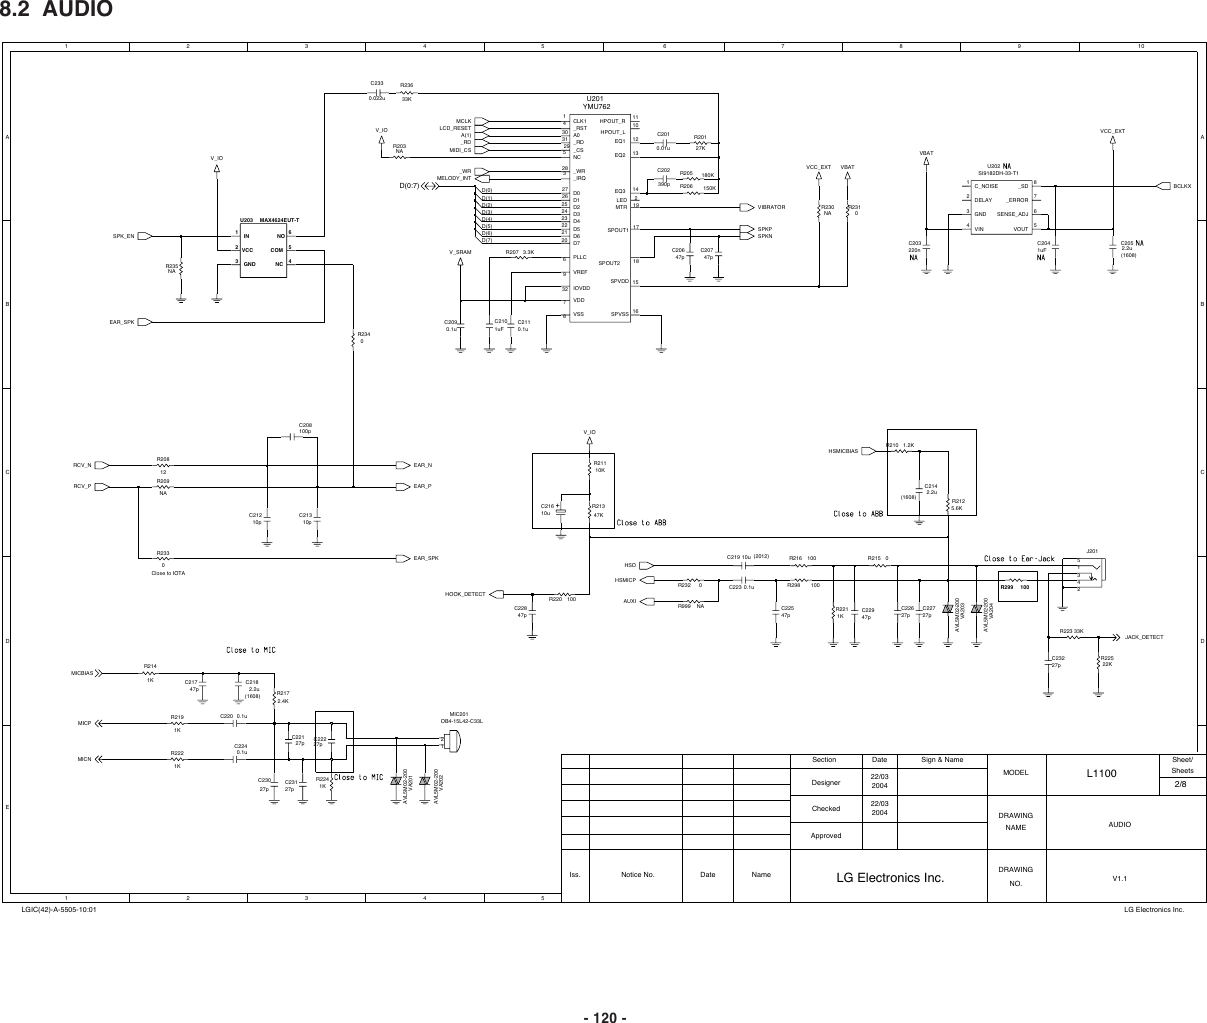 Page 2 of 11 - LG L1100 - Schematics. Www.s-manuals.com. Schematics